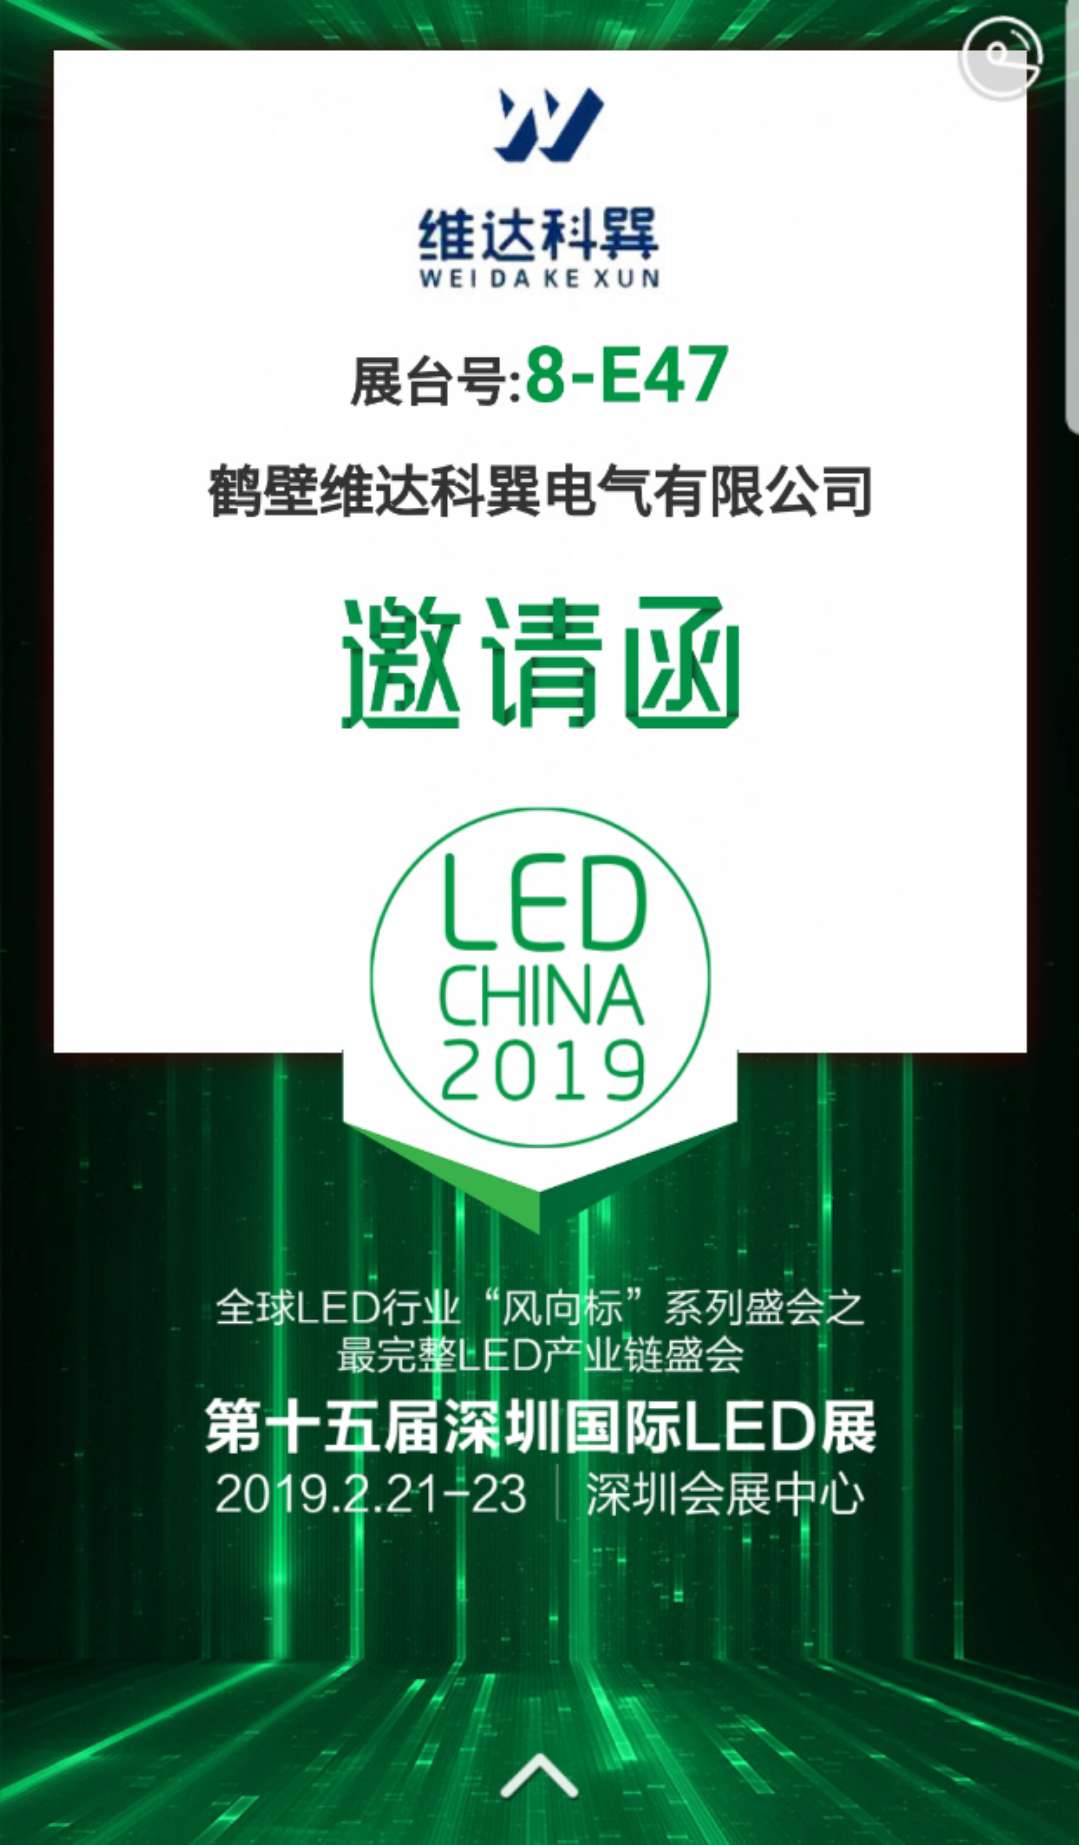 我司應邀參展第十五屆國際深圳LED展